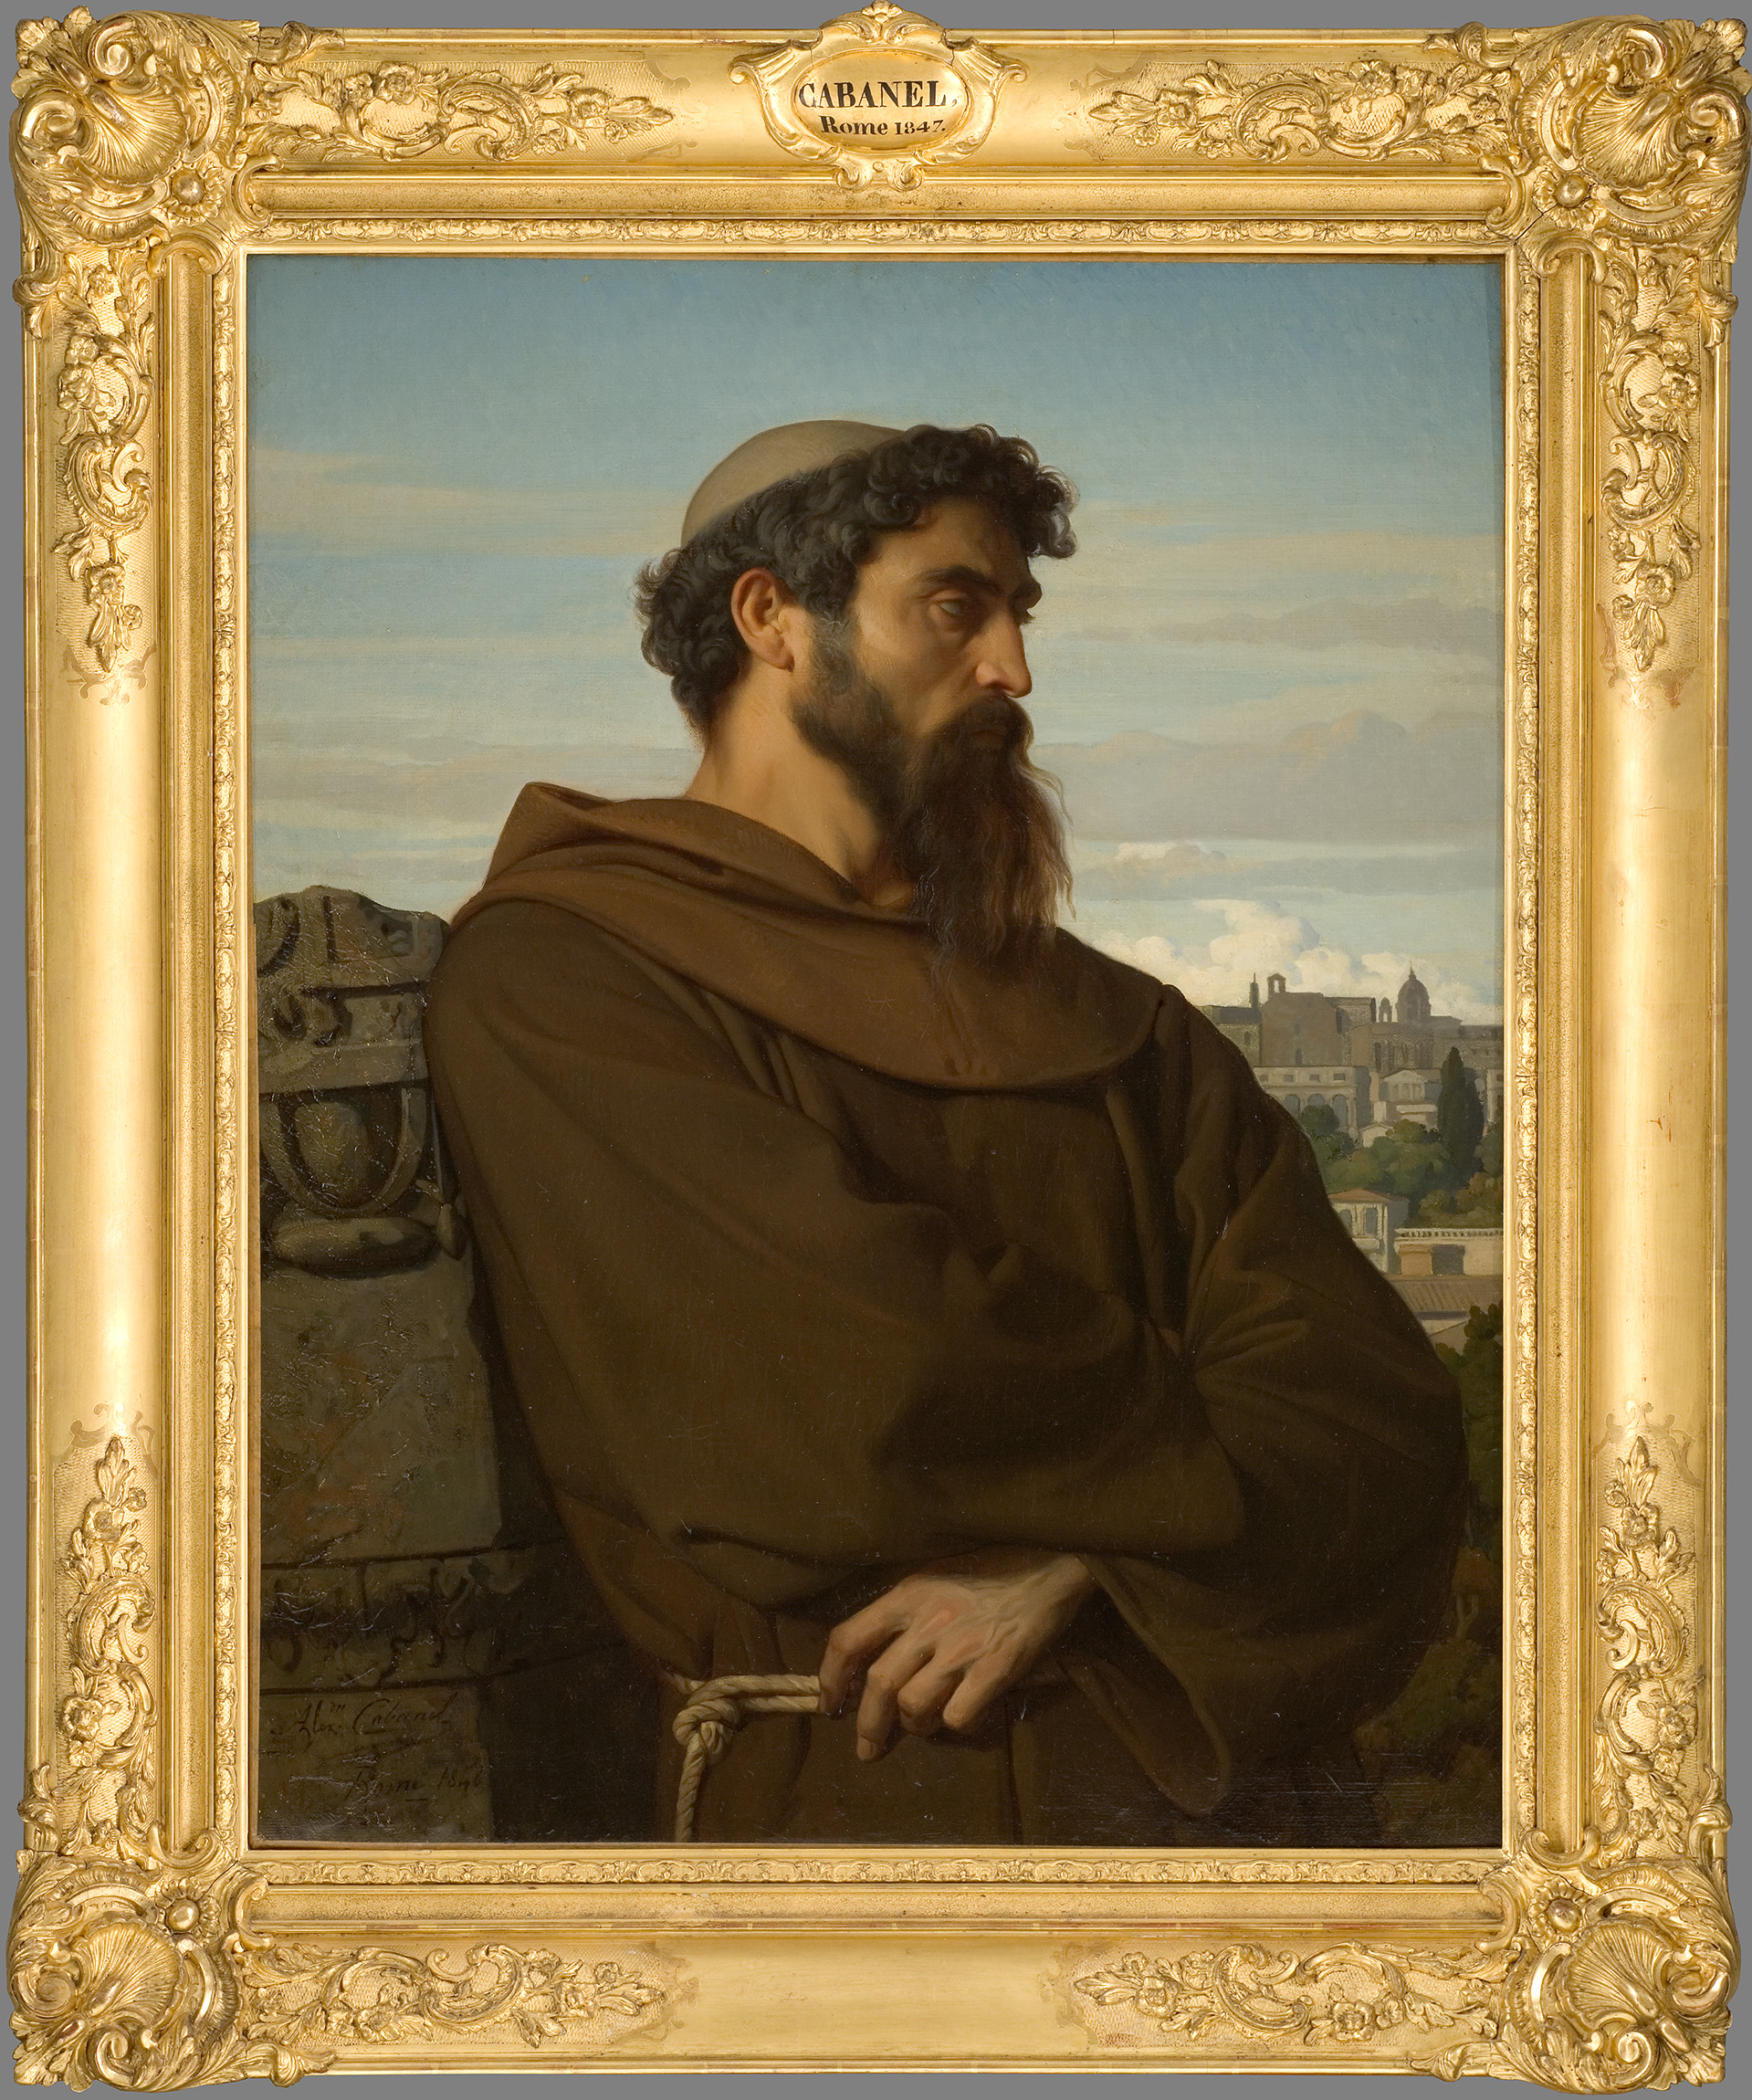 Un penseur, jeune moine romain